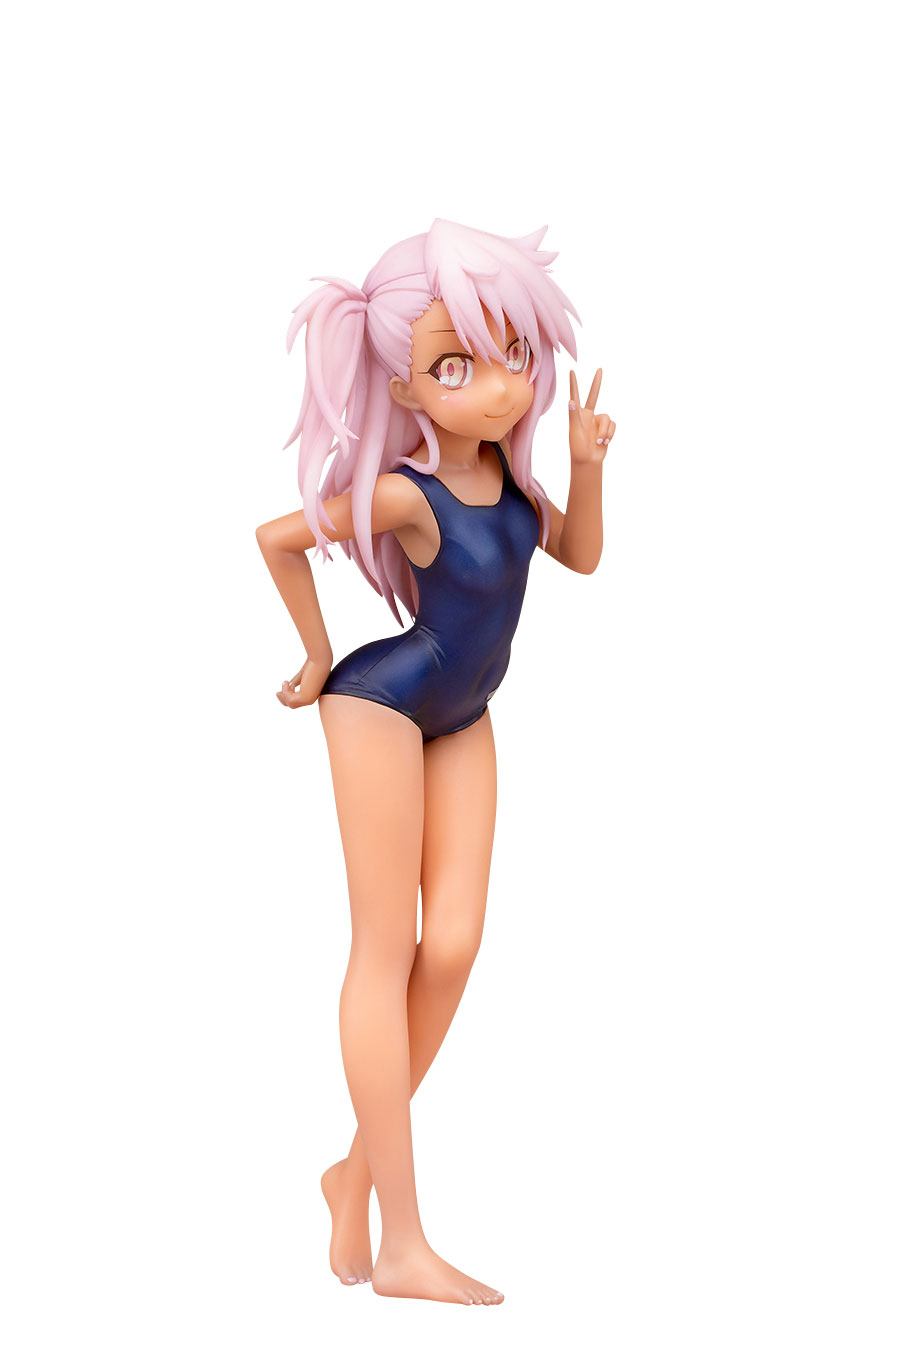 Fate/kaleid liner Prisma Illya statuette PVC 1/7 Chloe von Einzbern School Swimsuit Ver. 21 cm